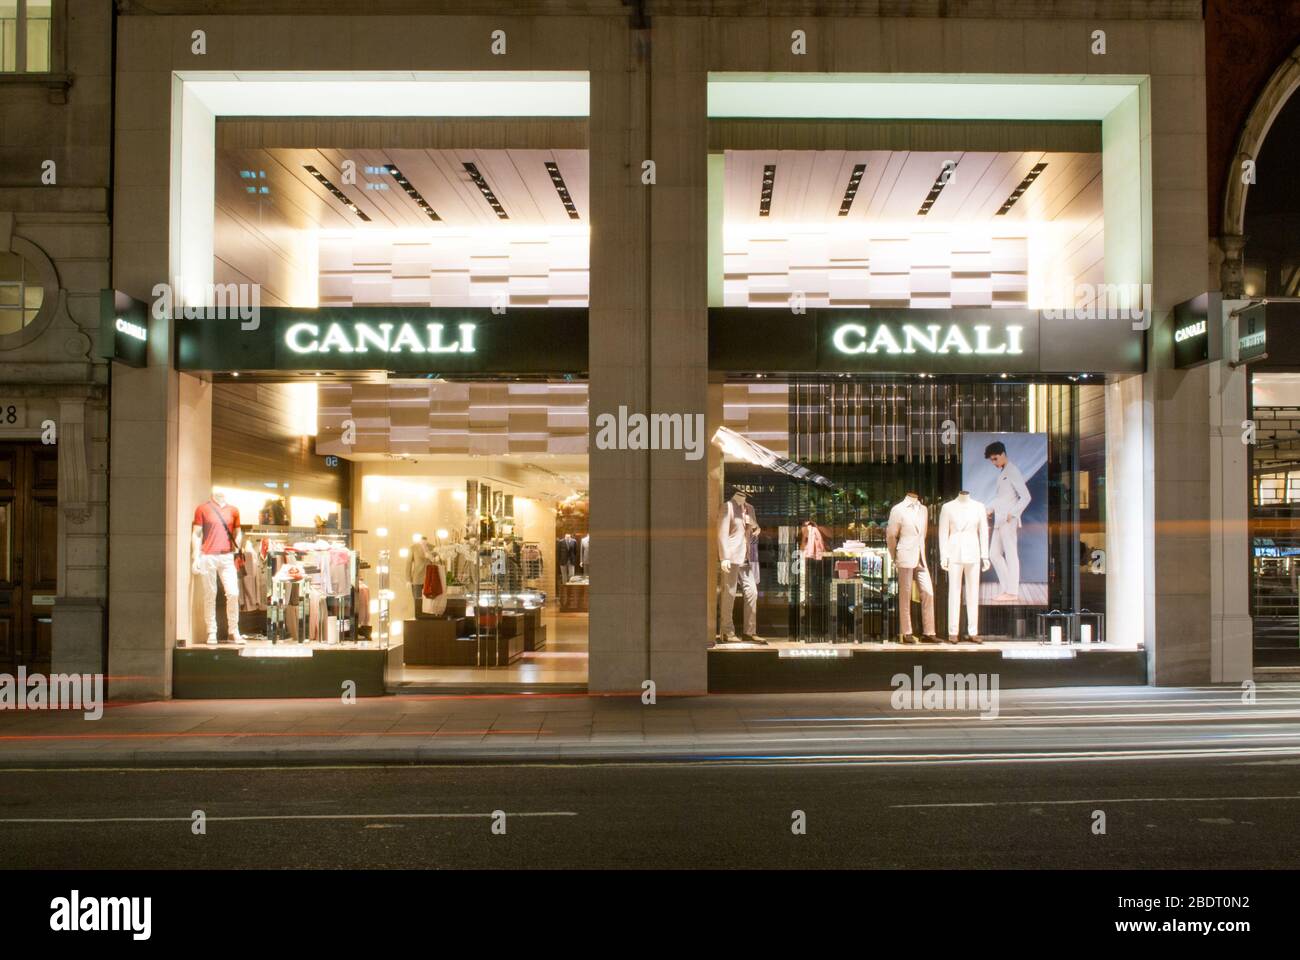 Canali 126-127 New Bond Street, Mayfair, London W1S 1DZ Stock Photo - Alamy